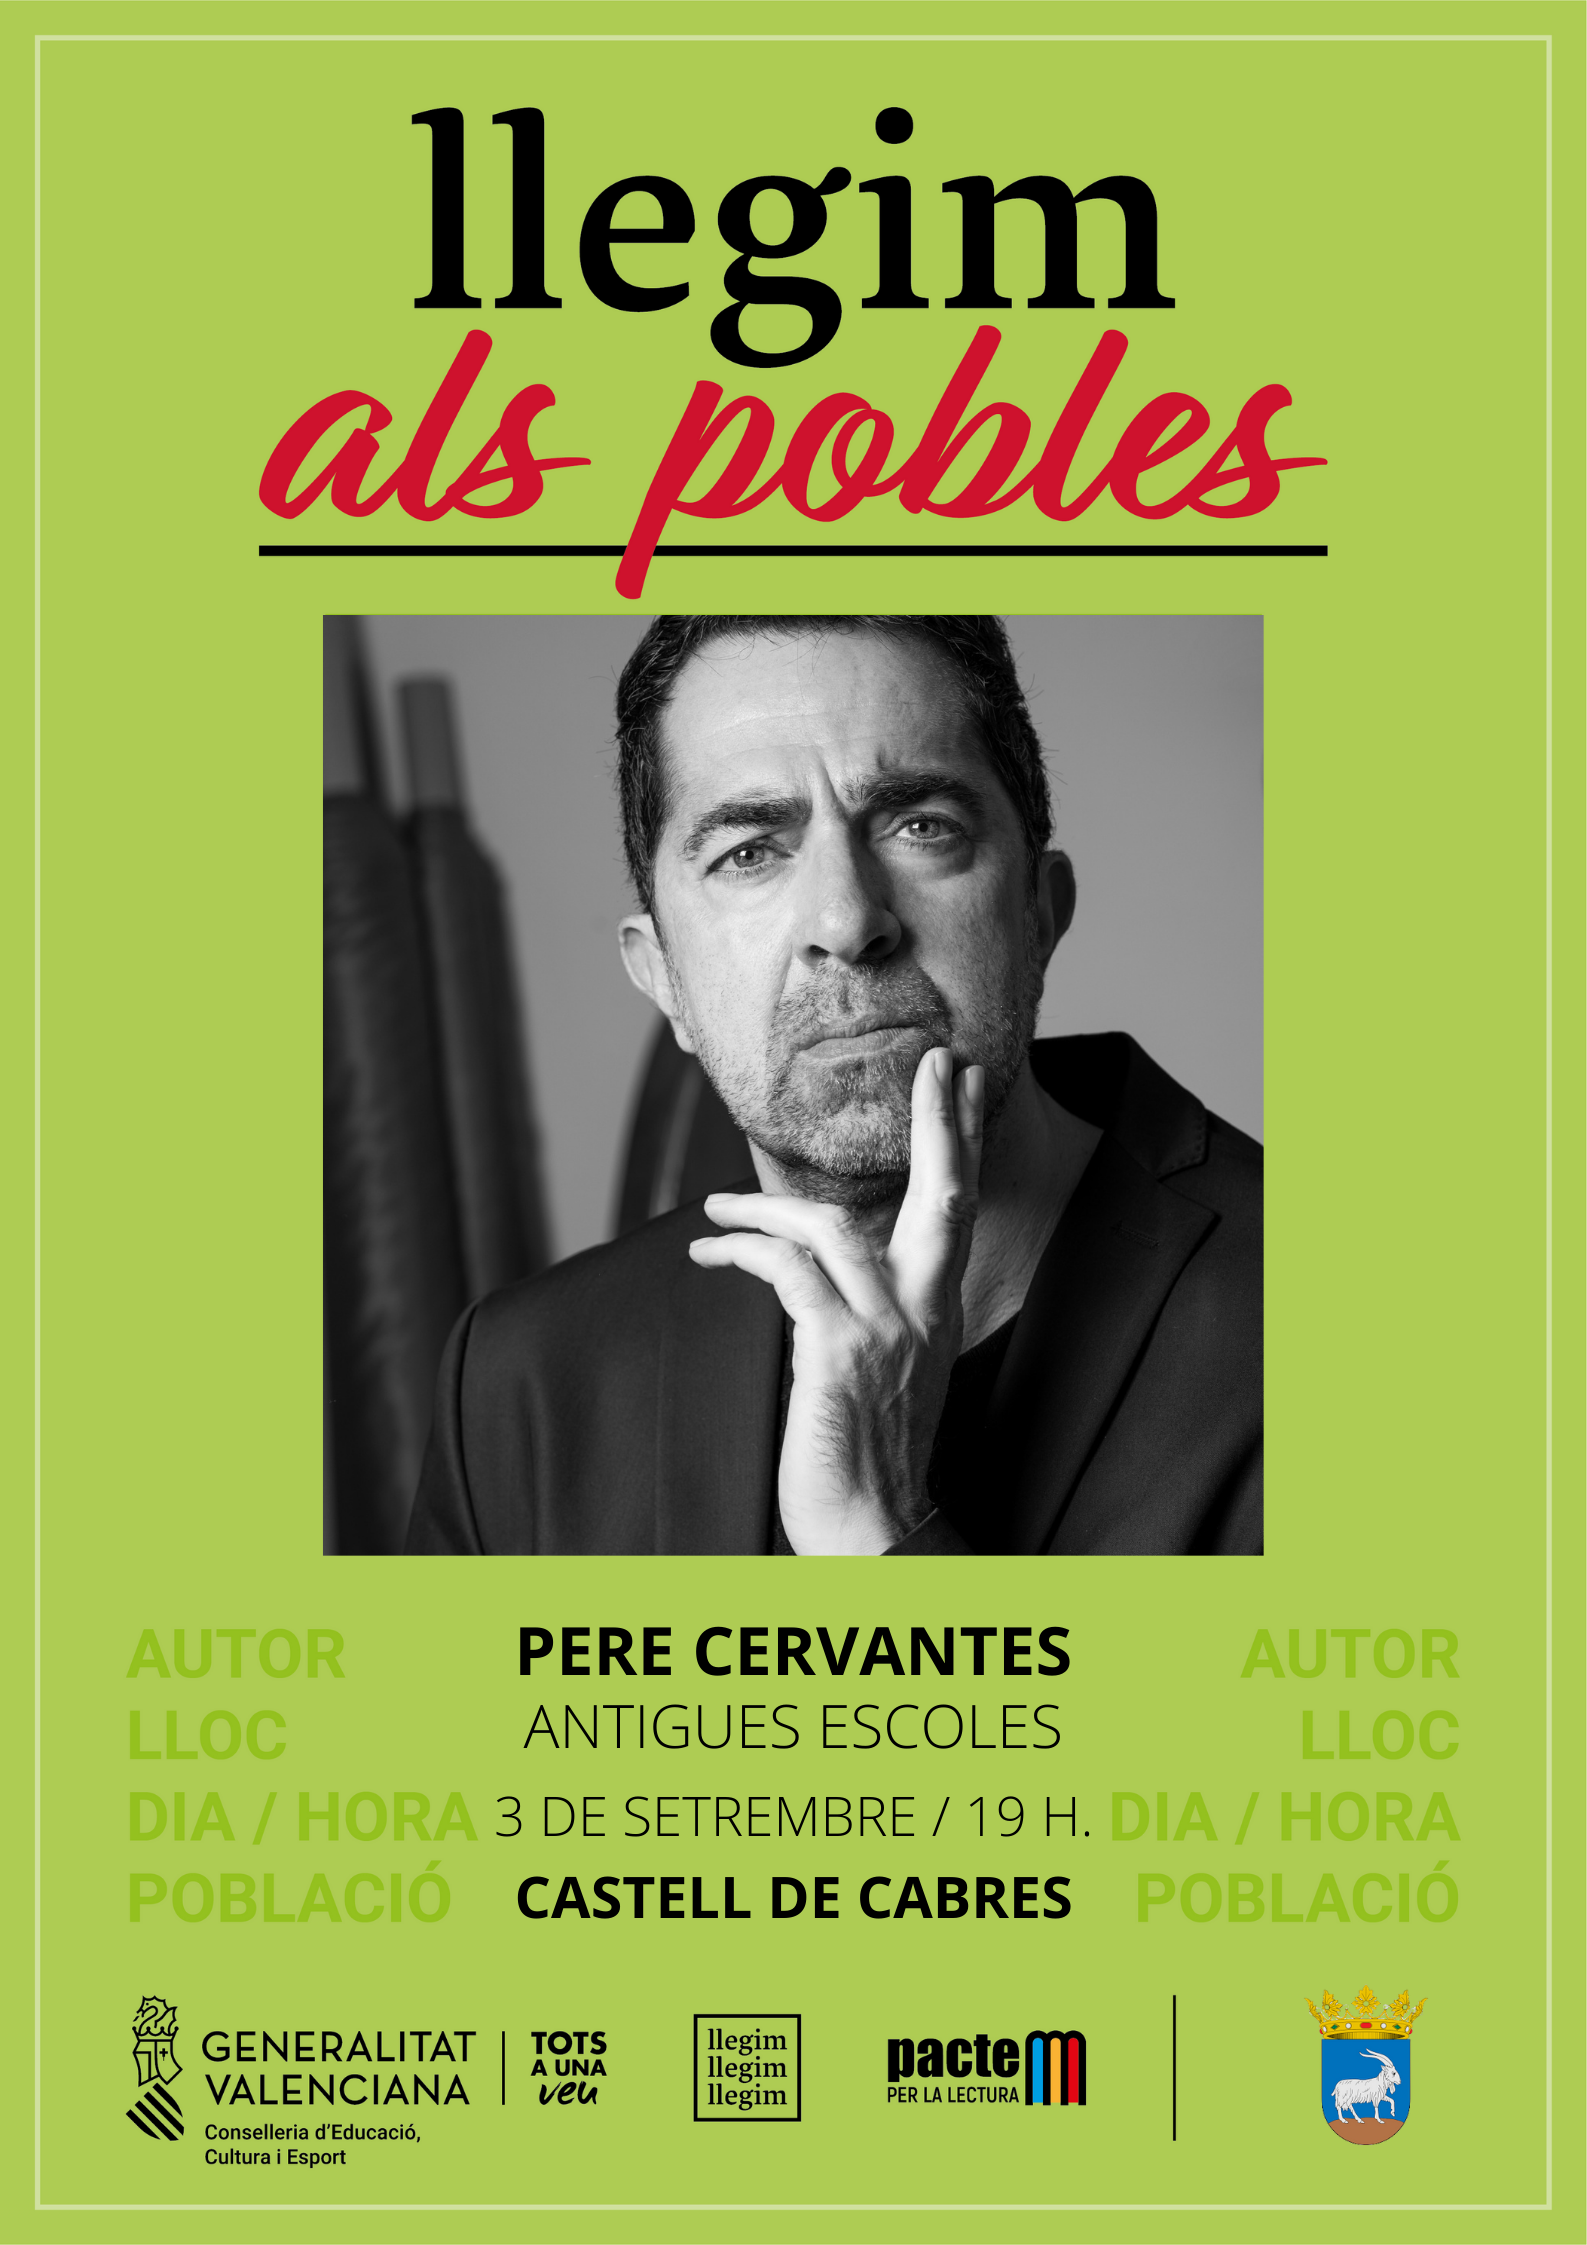 Pere Cervantes visitará Castell de Cabres el 3 de septiembre dentro de la campaña "Llegim als pobles"